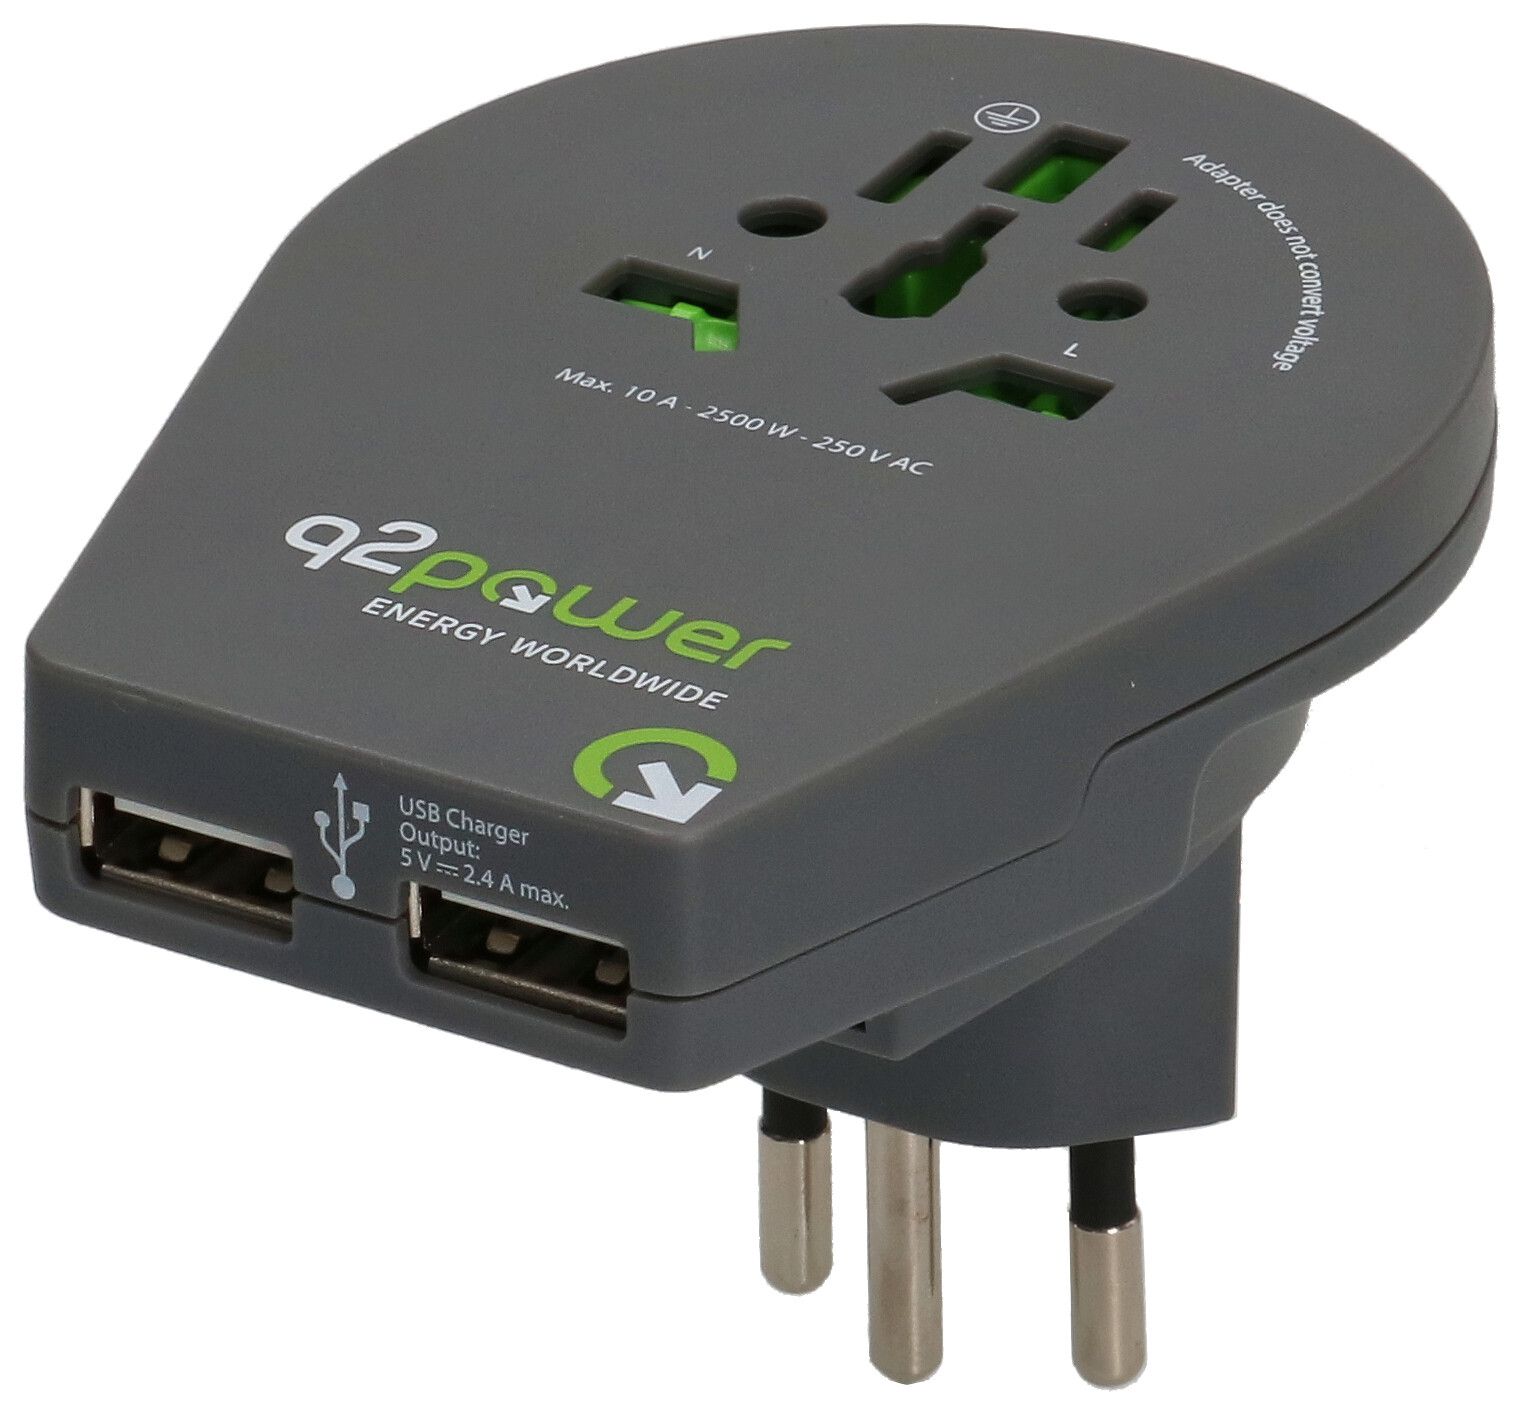 Adaptateur monde Q2 Power Afrique du Sud - USB - MAX HAURI AG